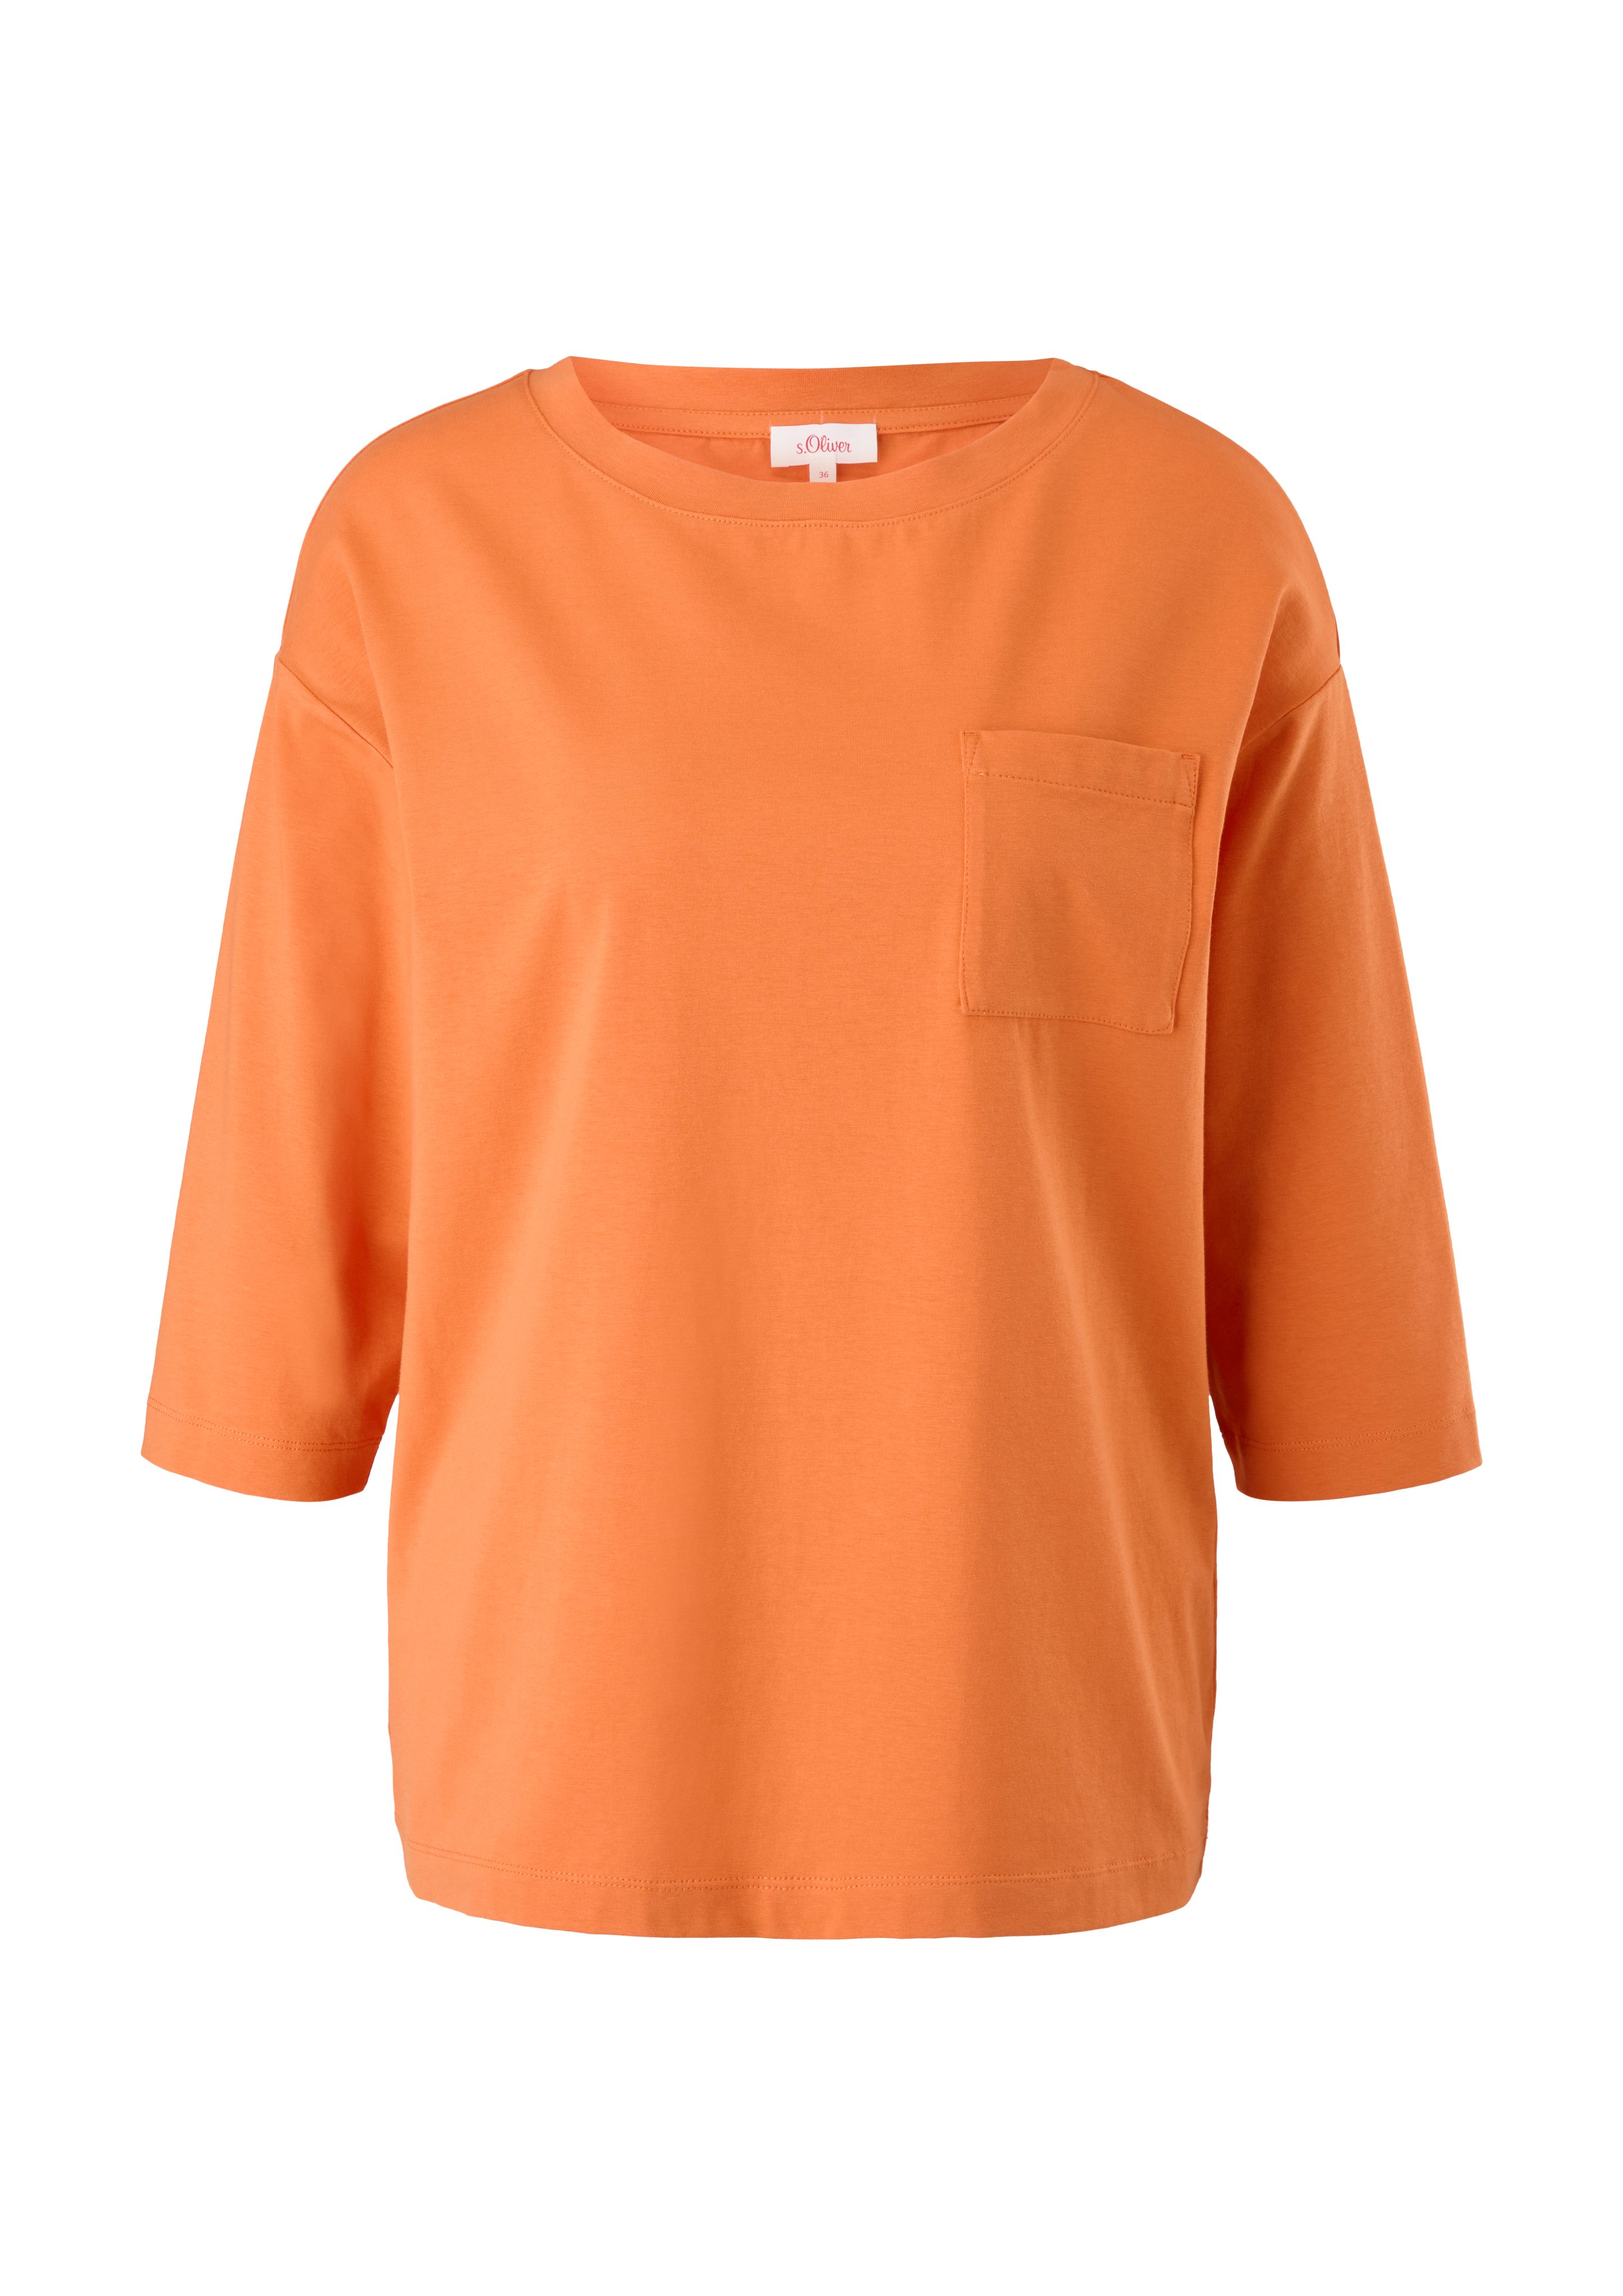 3/4-Arm-Shirt mit s.Oliver orange T-Shirt Brusttasche